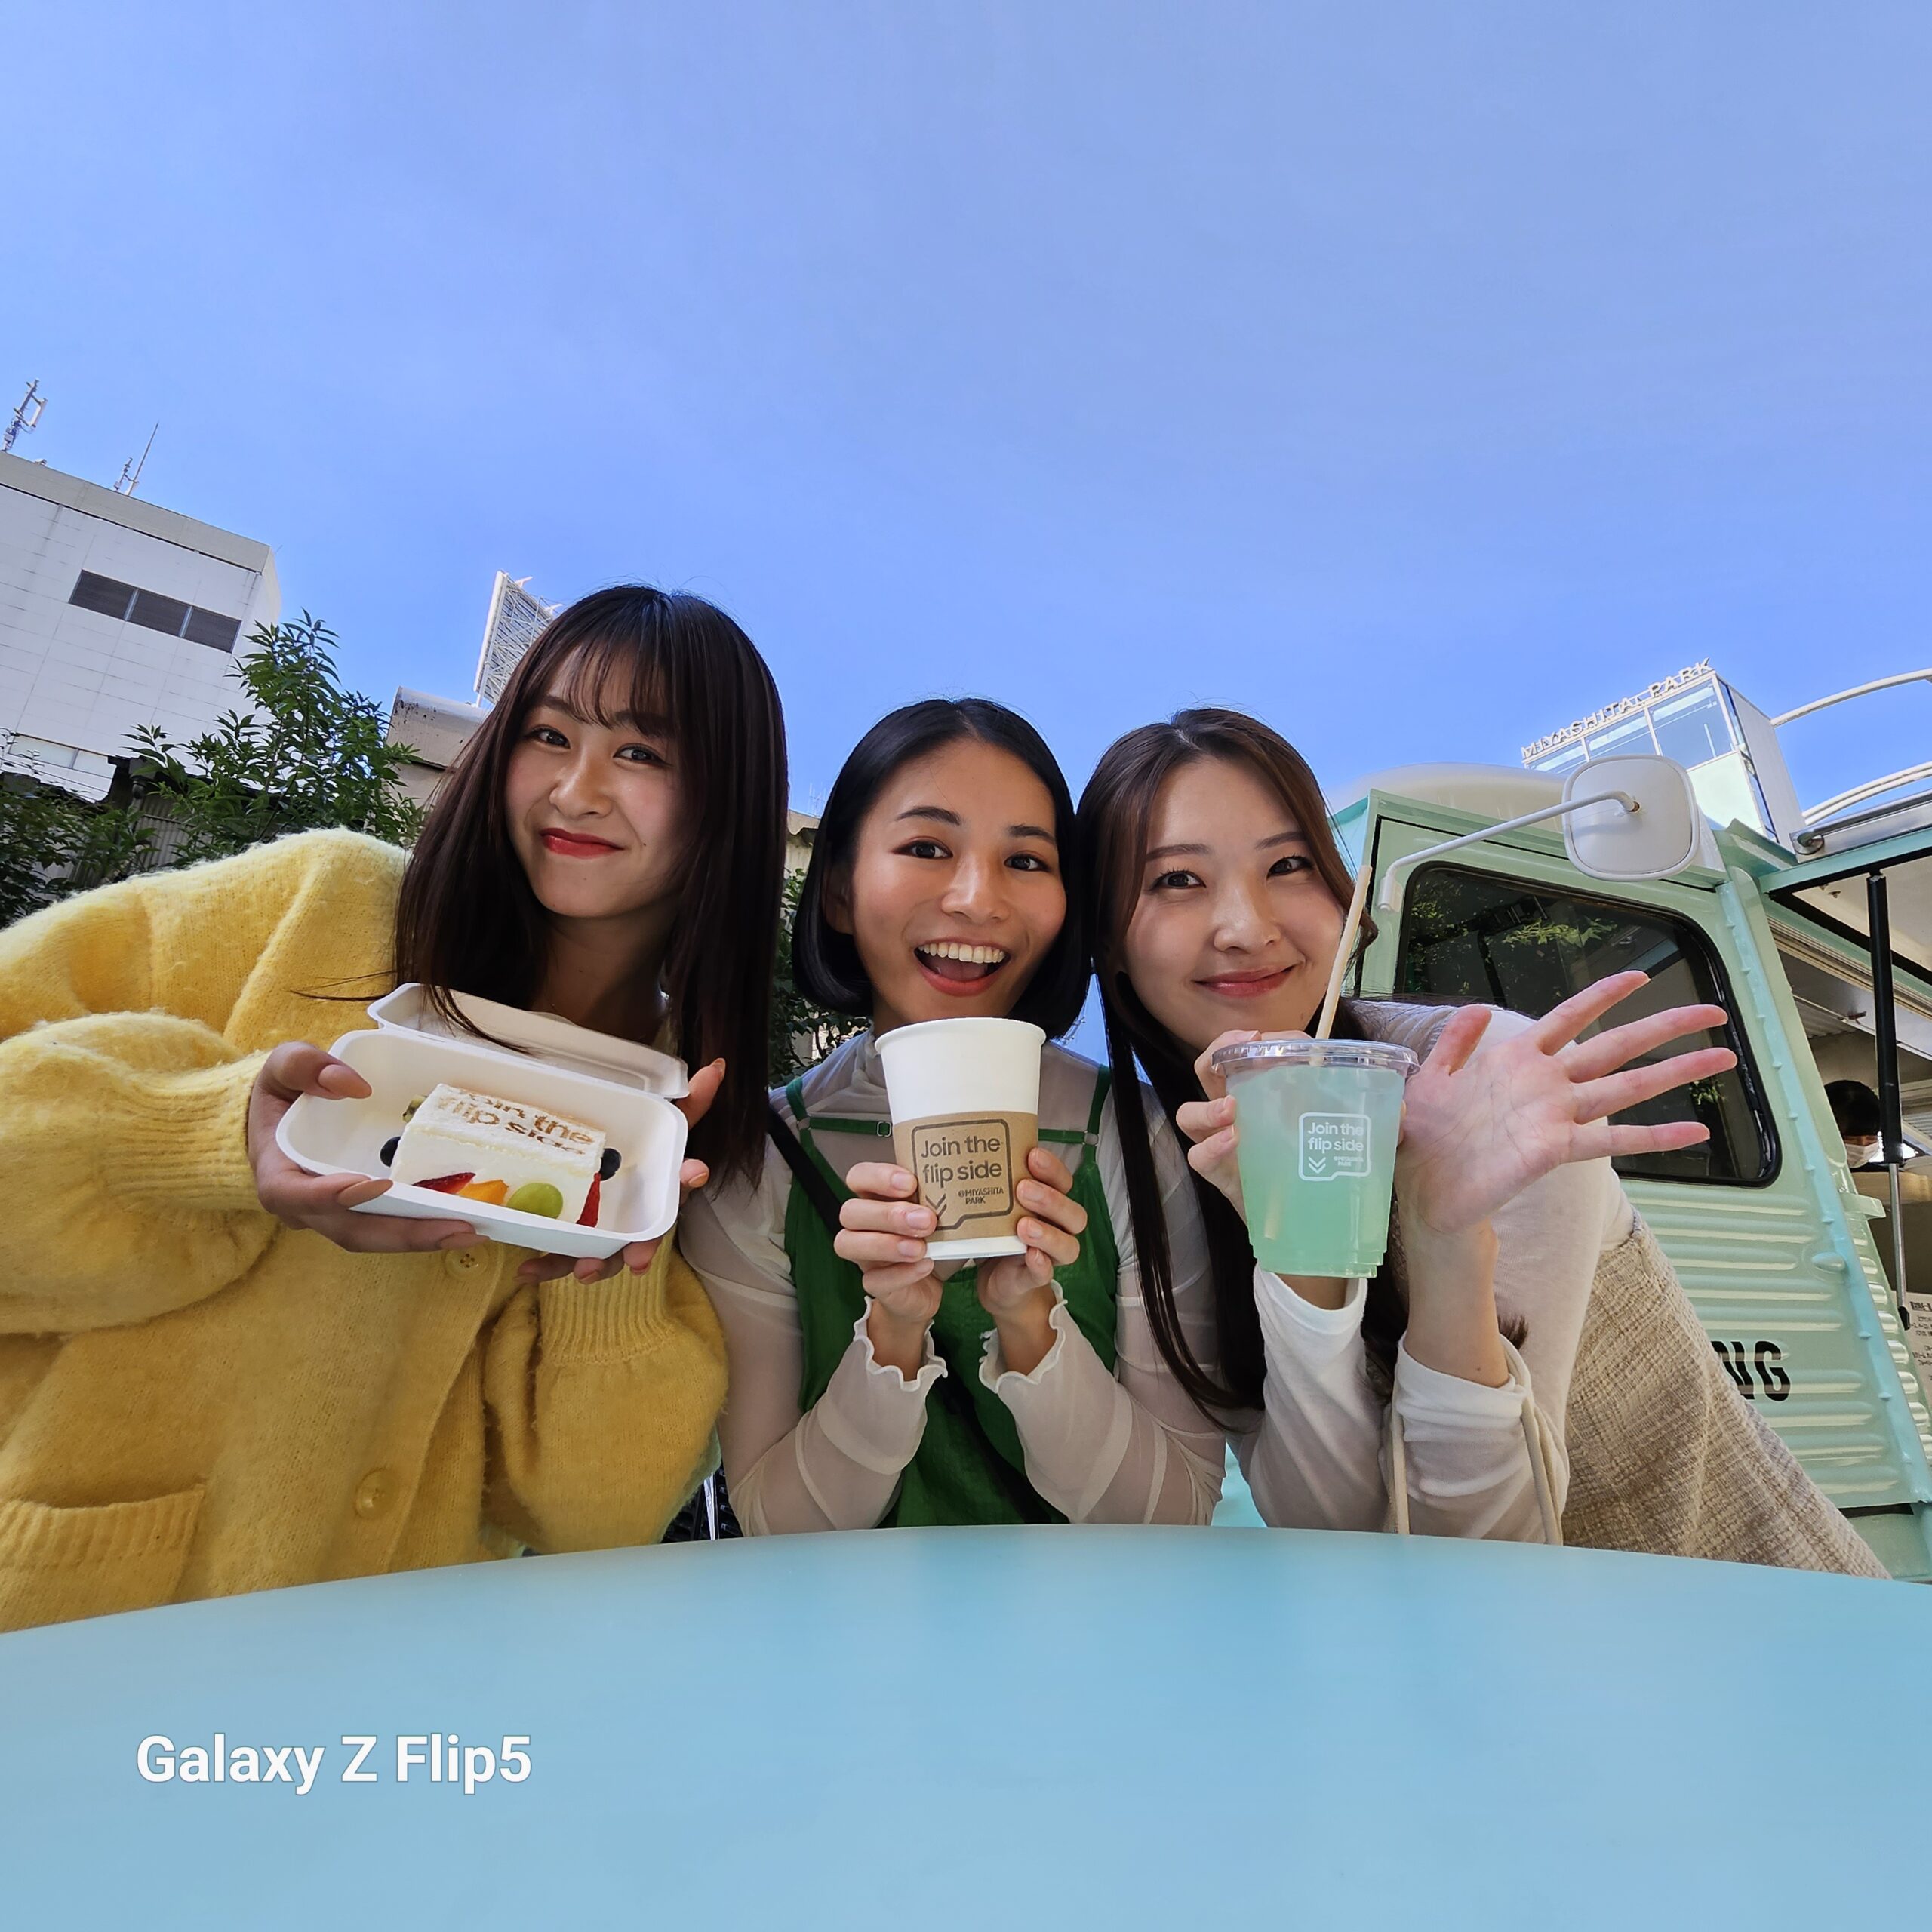 Galaxy Z Flip5　Join the flip side@MIYASHITA PARK